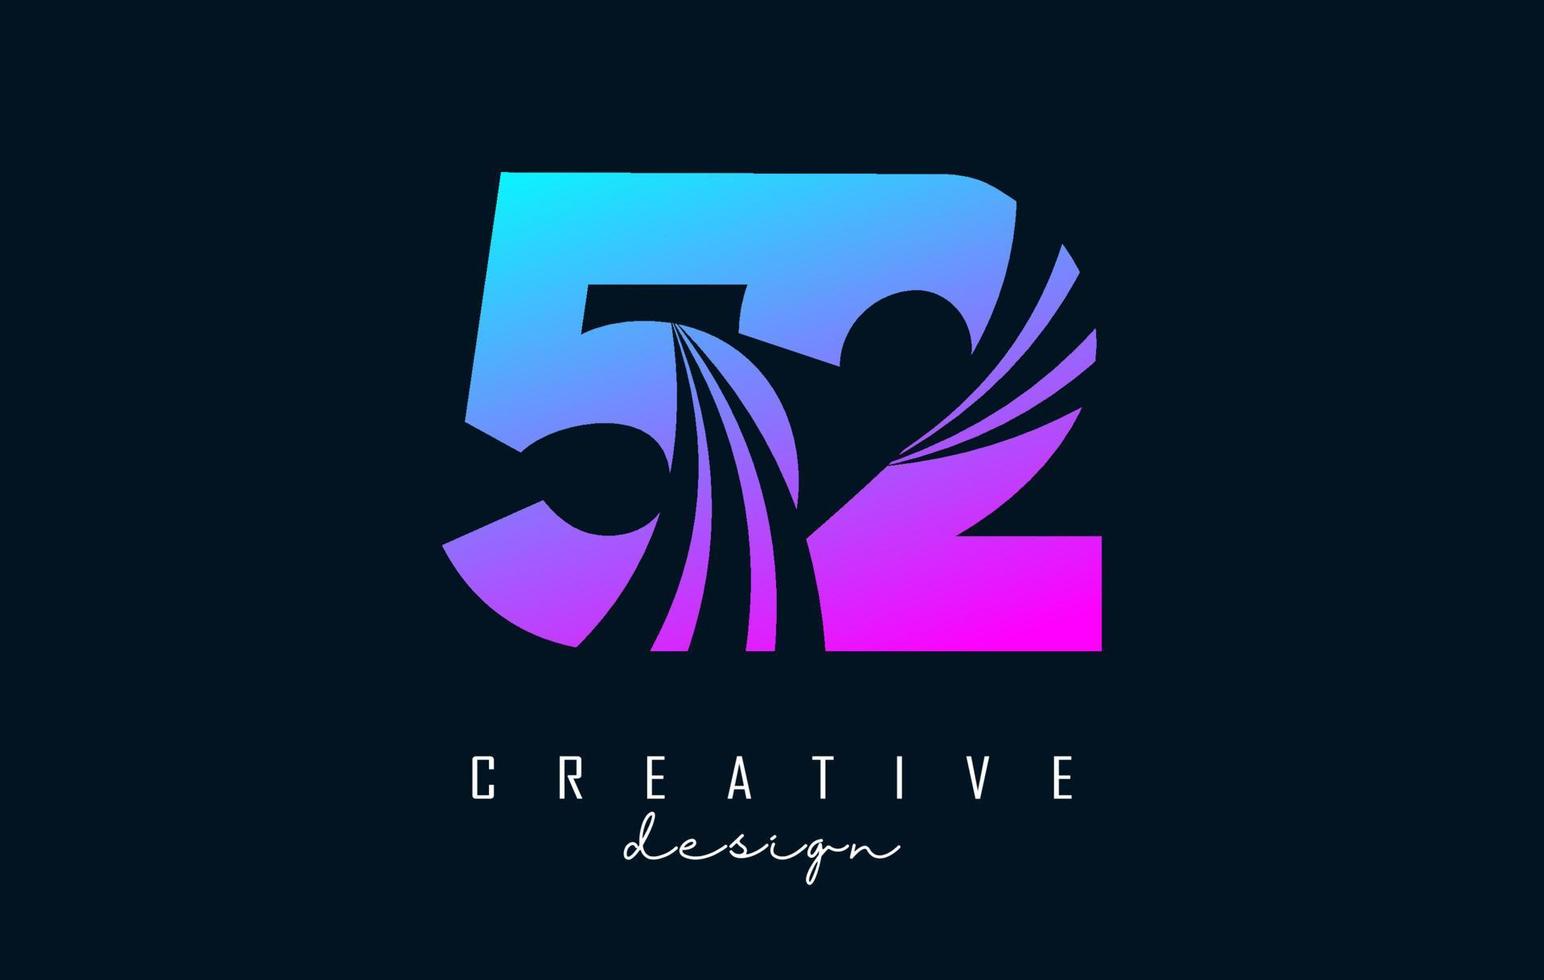 kleurrijk creatief aantal 52 5 2 logo met leidend lijnen en weg concept ontwerp. aantal met meetkundig ontwerp. vector